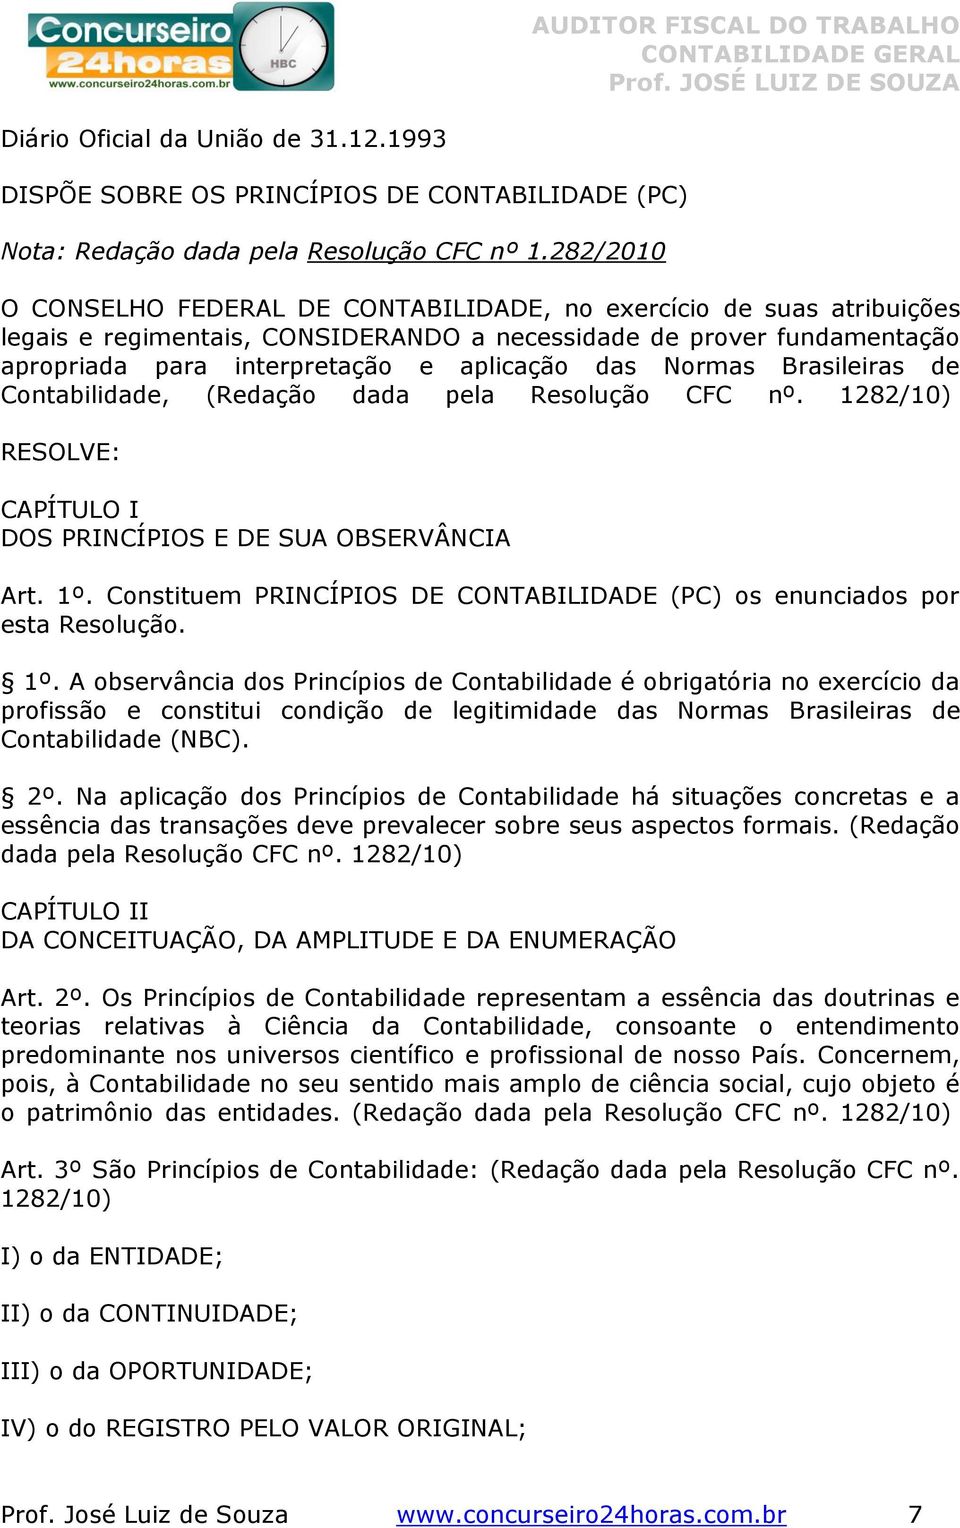 Normas Brasileiras de Contabilidade, (Redação dada pela Resolução CFC nº. 1282/10) RESOLVE: CAPÍTULO I DOS PRINCÍPIOS E DE SUA OBSERVÂNCIA Art. 1º.